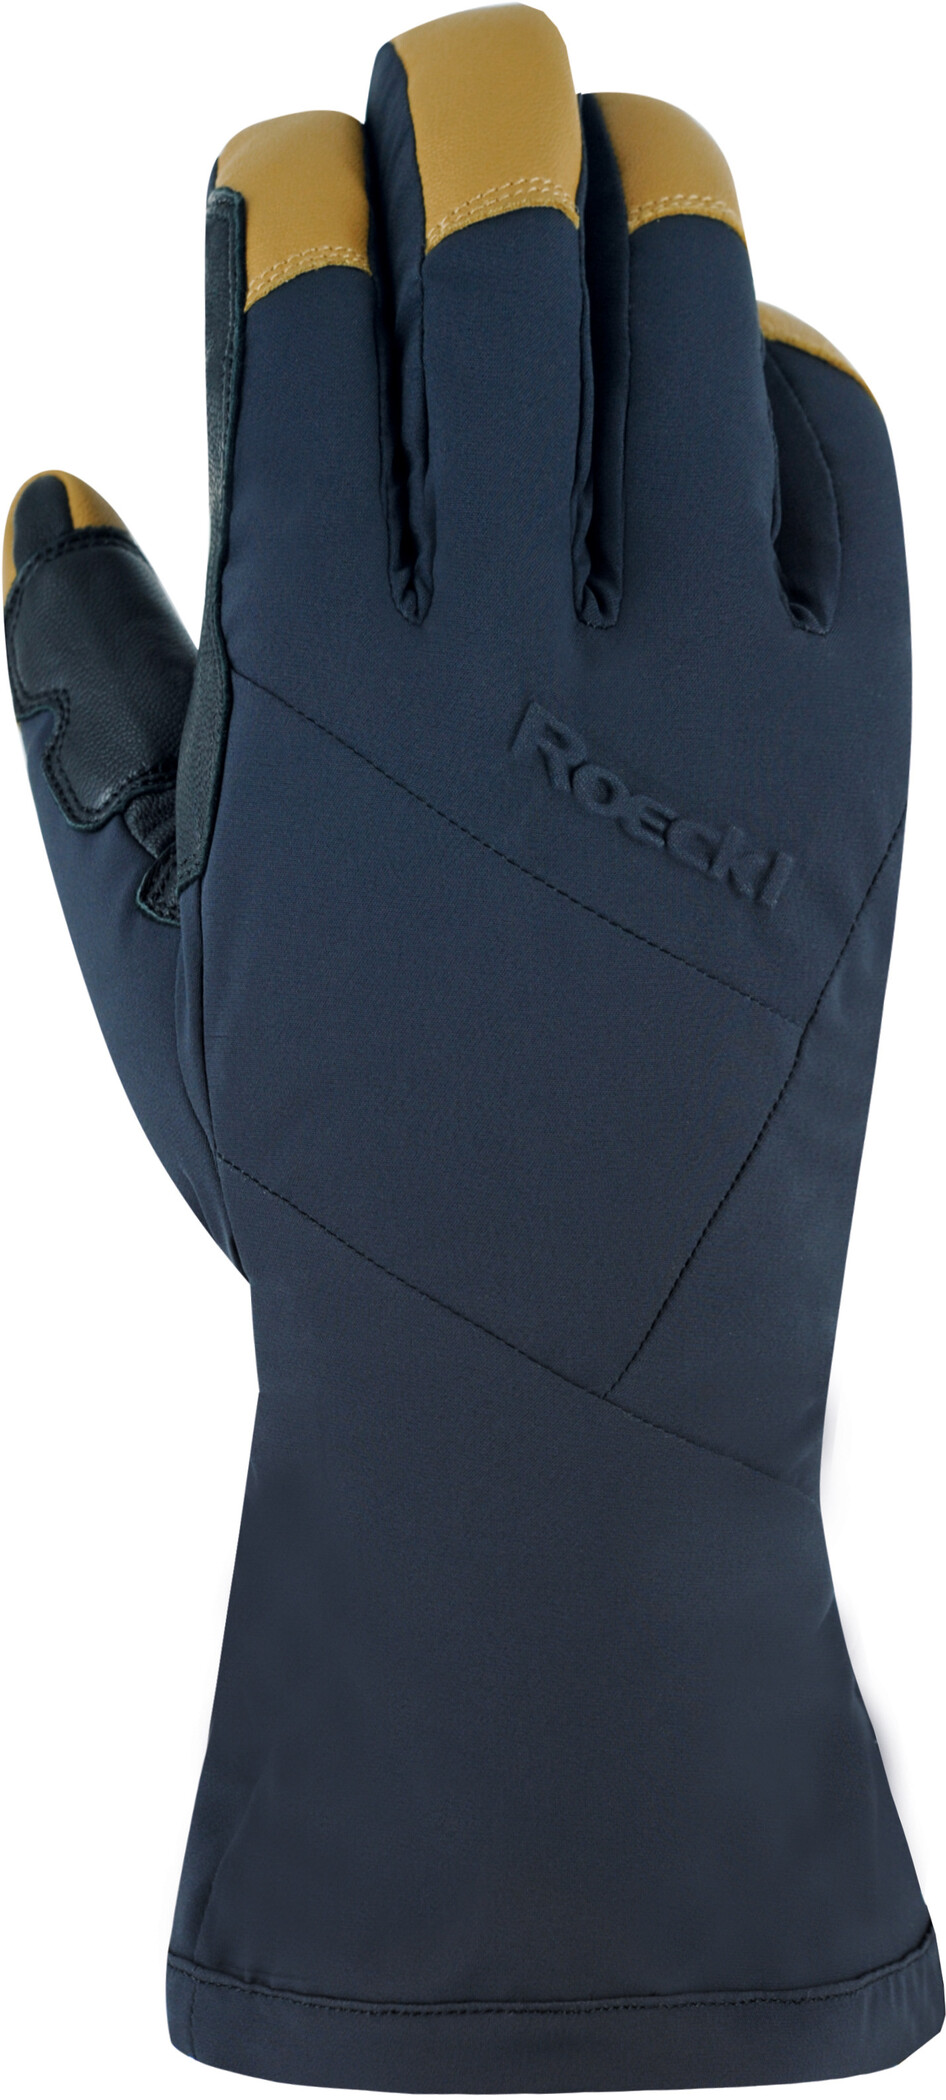 Roeckl Matrei Handschuhe schwarz/braun